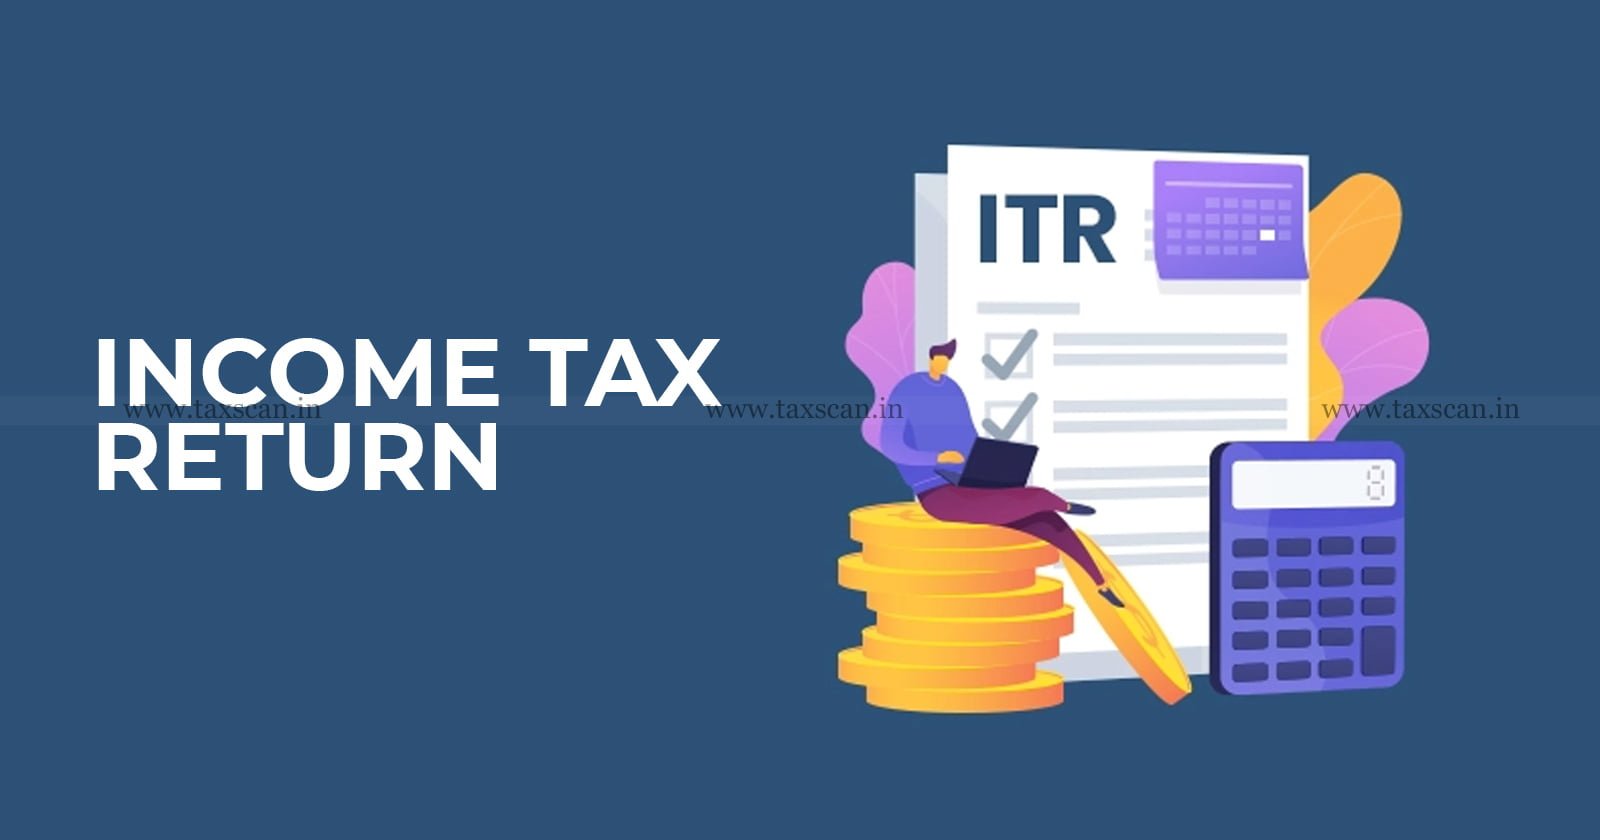 Income Tax - ITR - ITR-2 - Income tax e-filing - Income Tax portal - Online income tax return filing - online itr filing - online ITR - pre-filled ITR-2 - Income - tax - return filing online - ITR-2 - taxscan